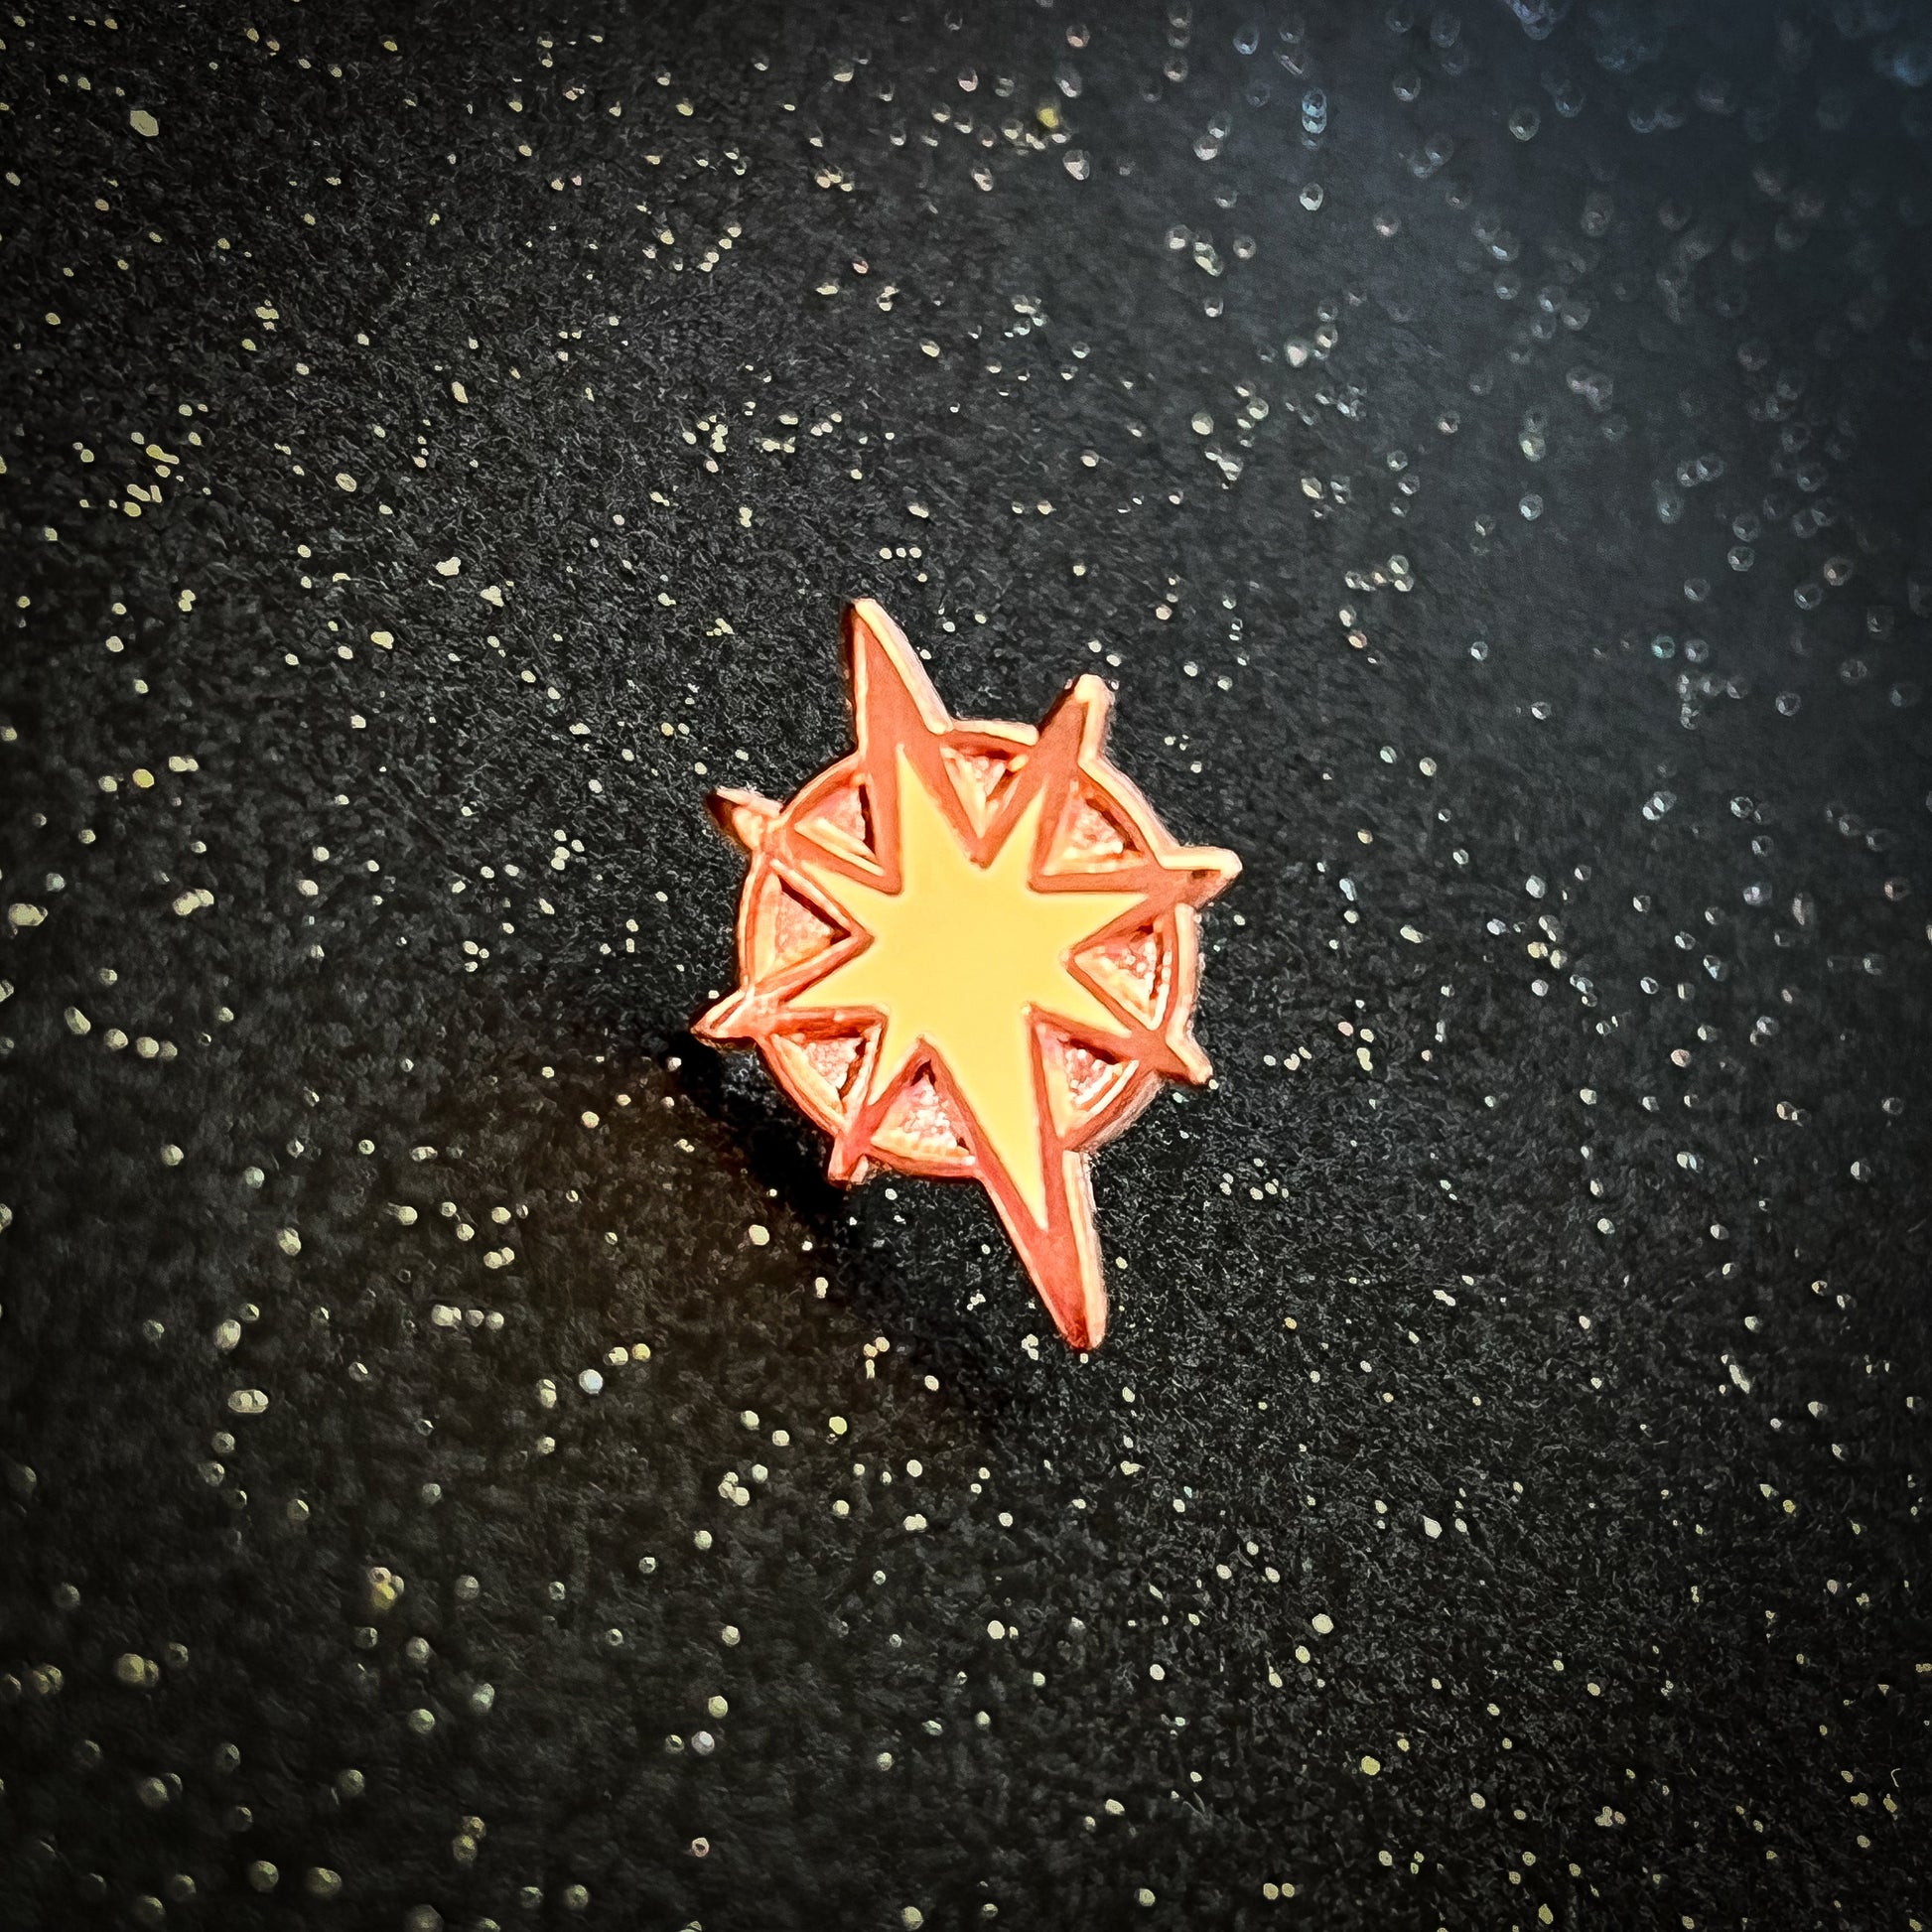 MilkyWay Star Mini Pins  -  0.65" Mini Space pins